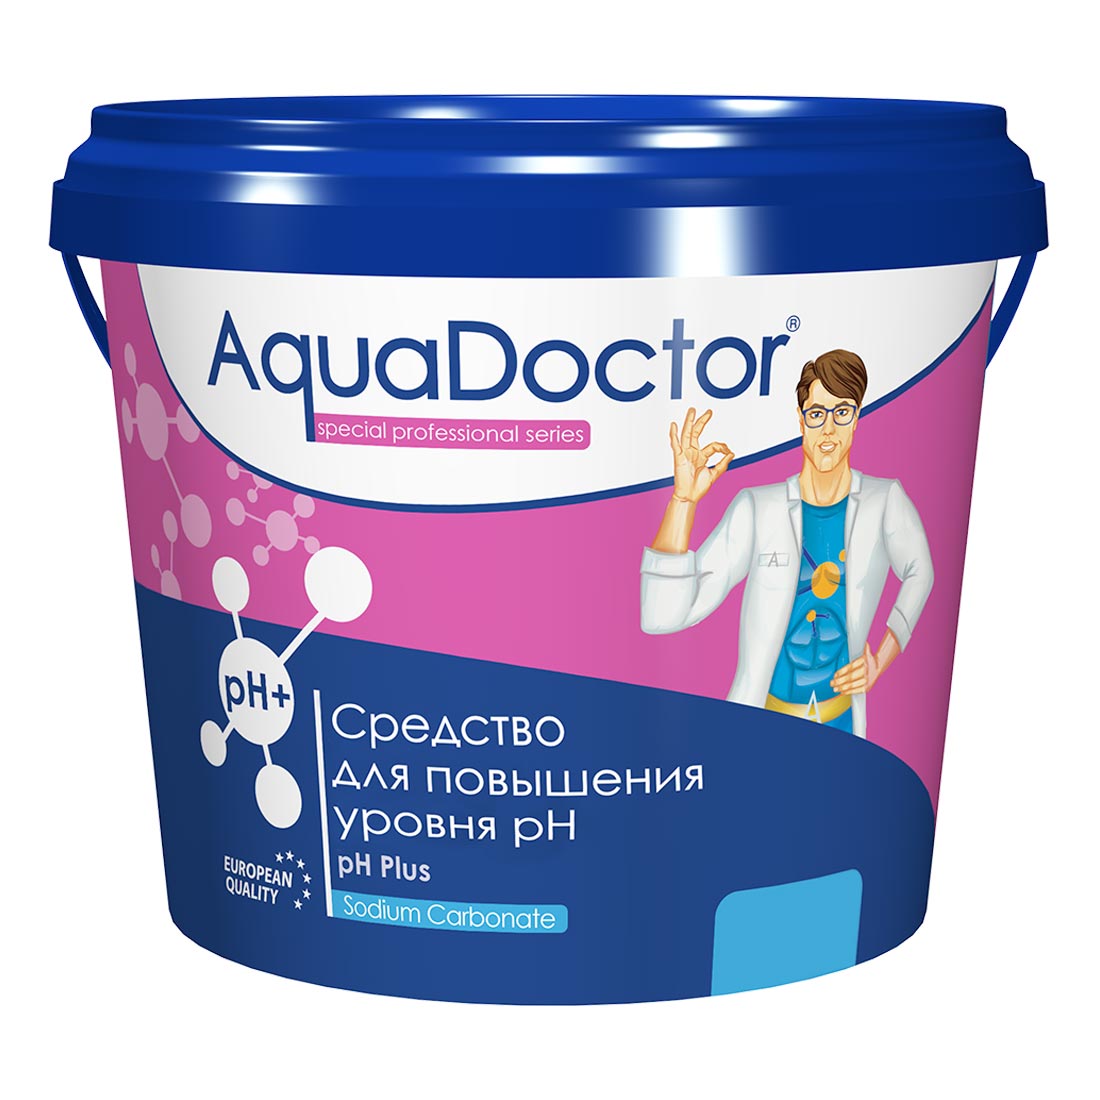 PH Плюс, 50кг ведро, гранулы для повышения уровня рН воды (PHP-50), AquaDoctor AQ2738